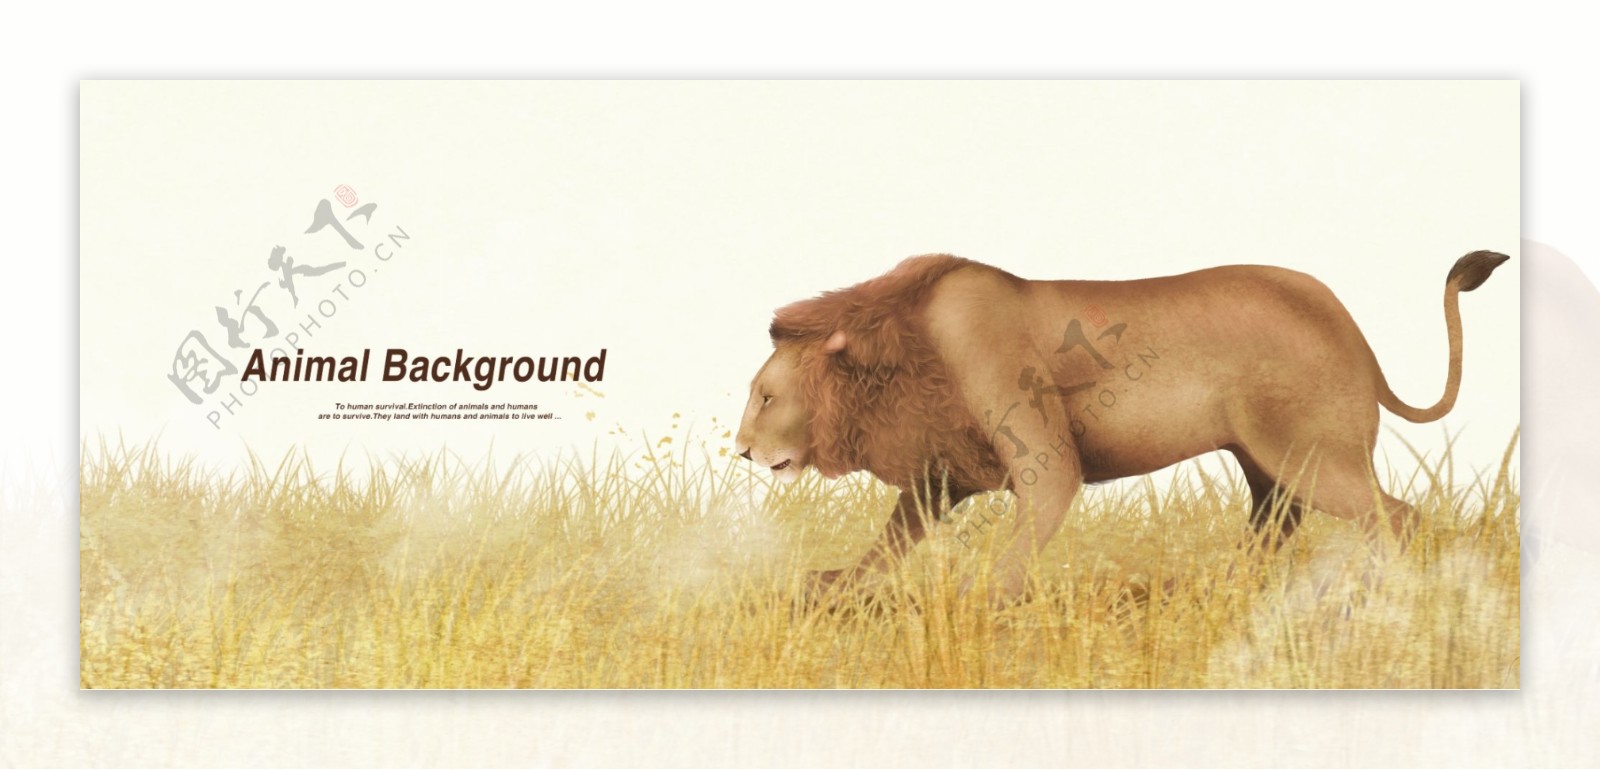 狮子动物海报展示